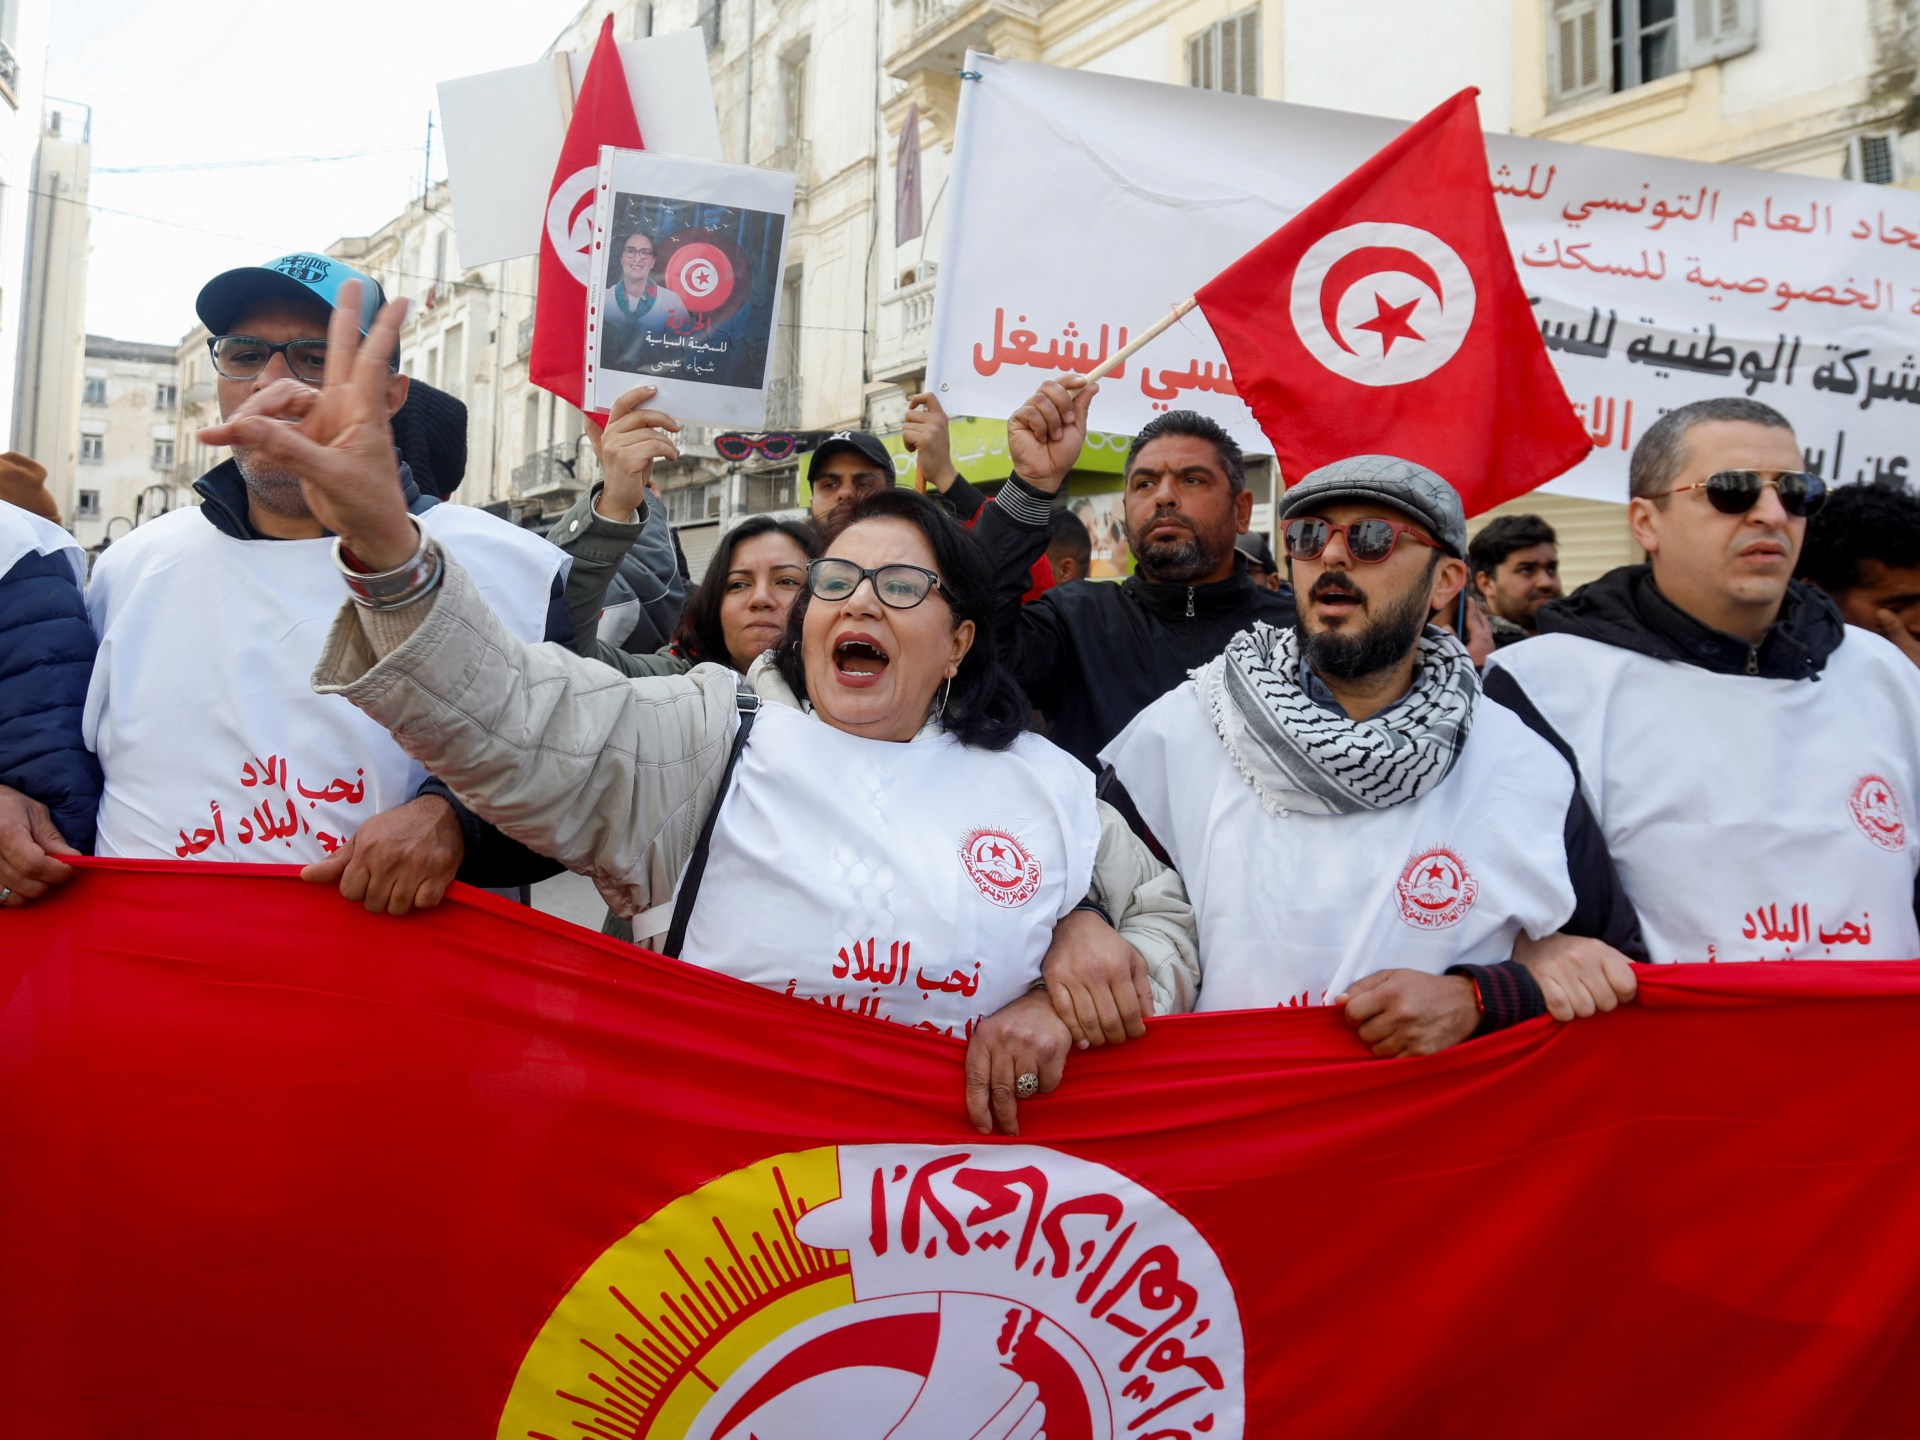 Siapa tokoh oposisi utama yang menjadi sasaran di Tunisia?  |  Berita Politik